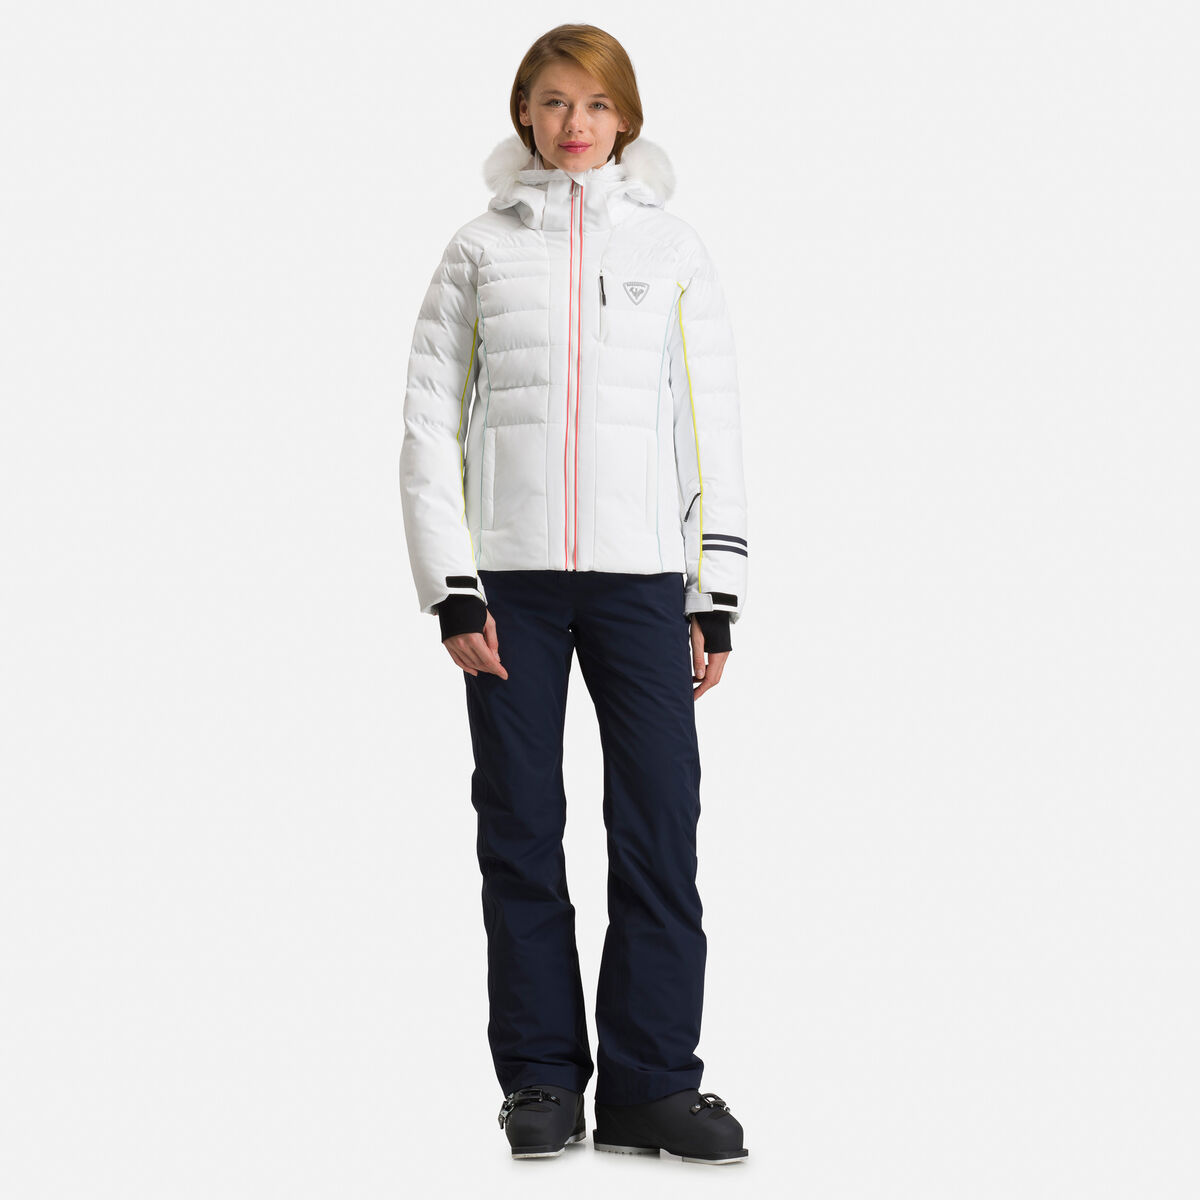 Women's Rapide XP Ski Jacket